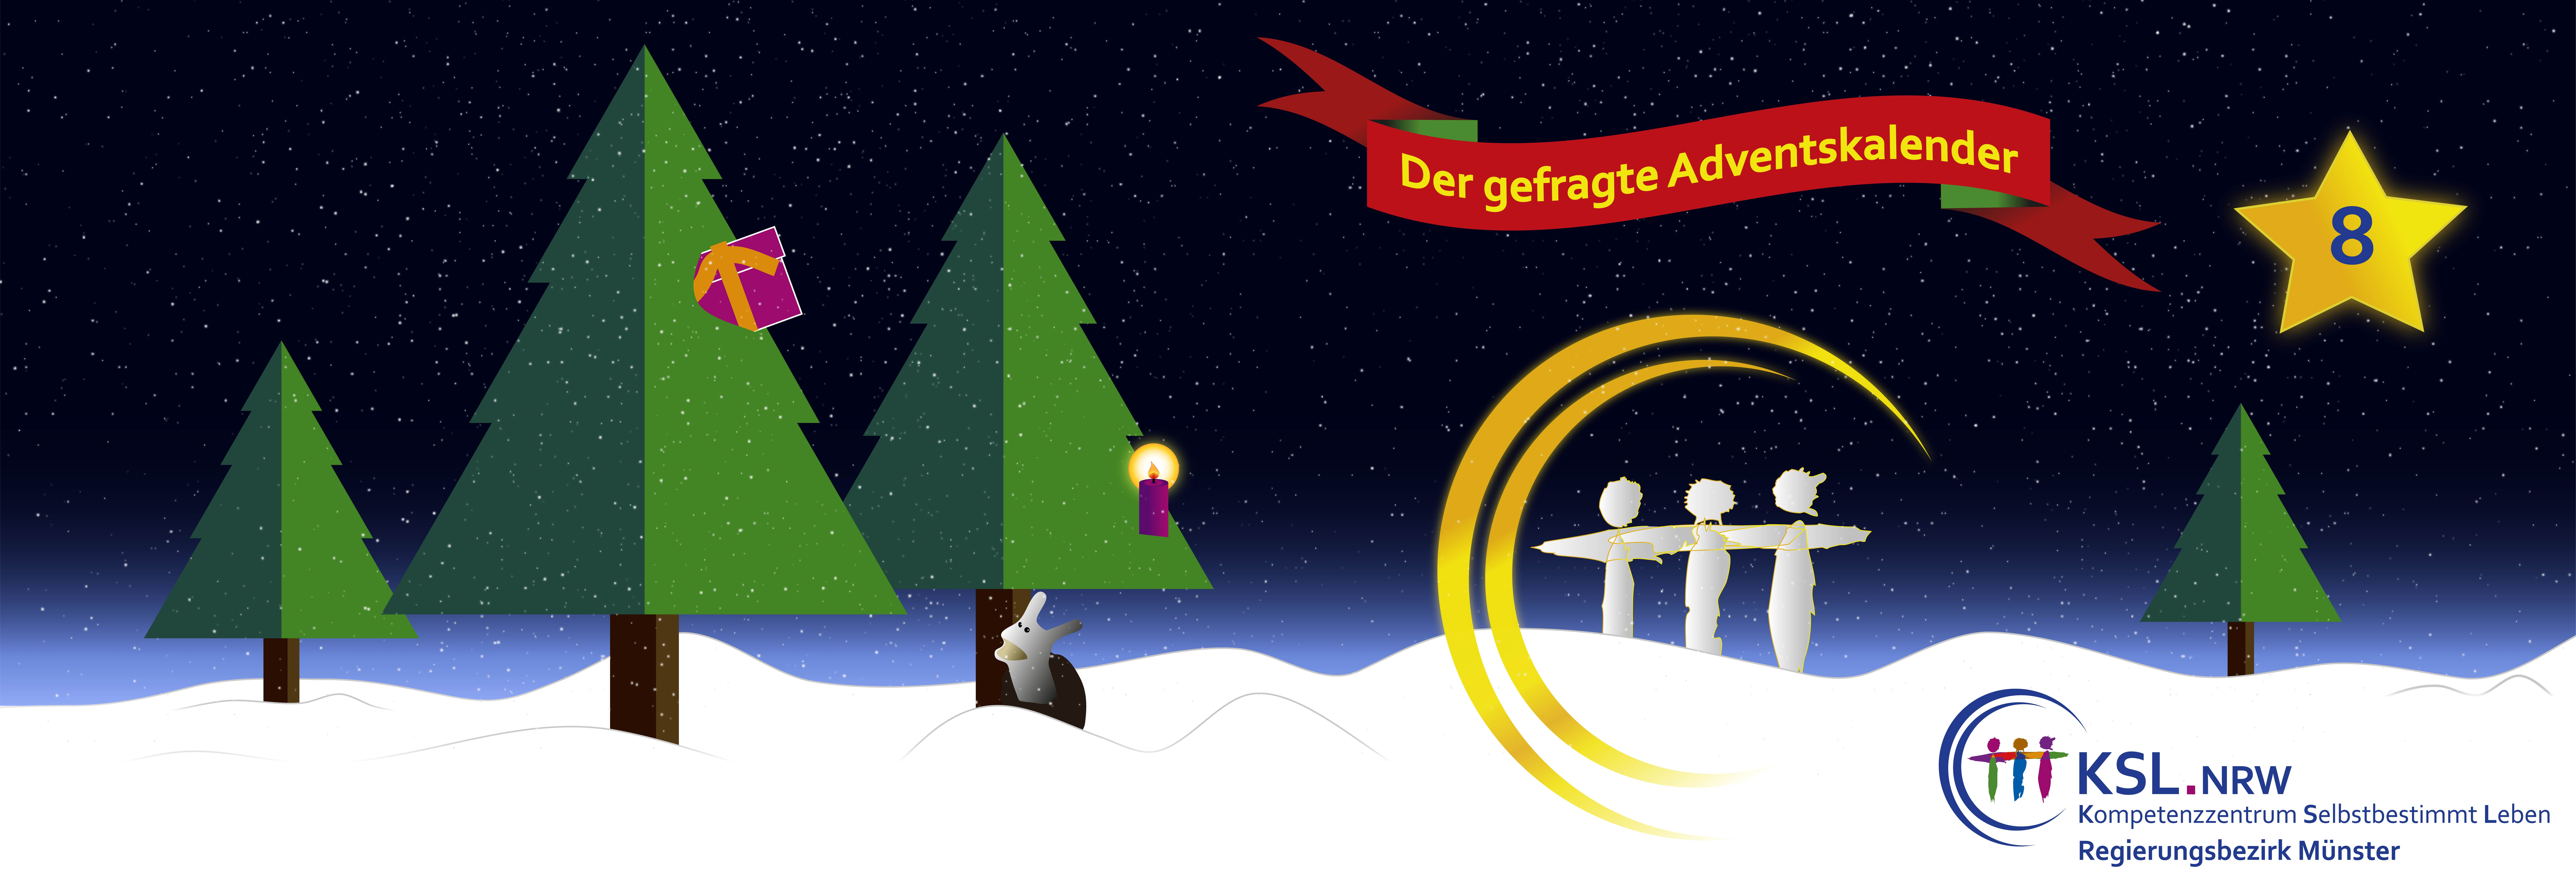 Der gefragte Adventskalaneder - KSL Münster - weihnachtlicher Hintergrund mit 3 Tannenbäumen - eine Schnecke im Schnee